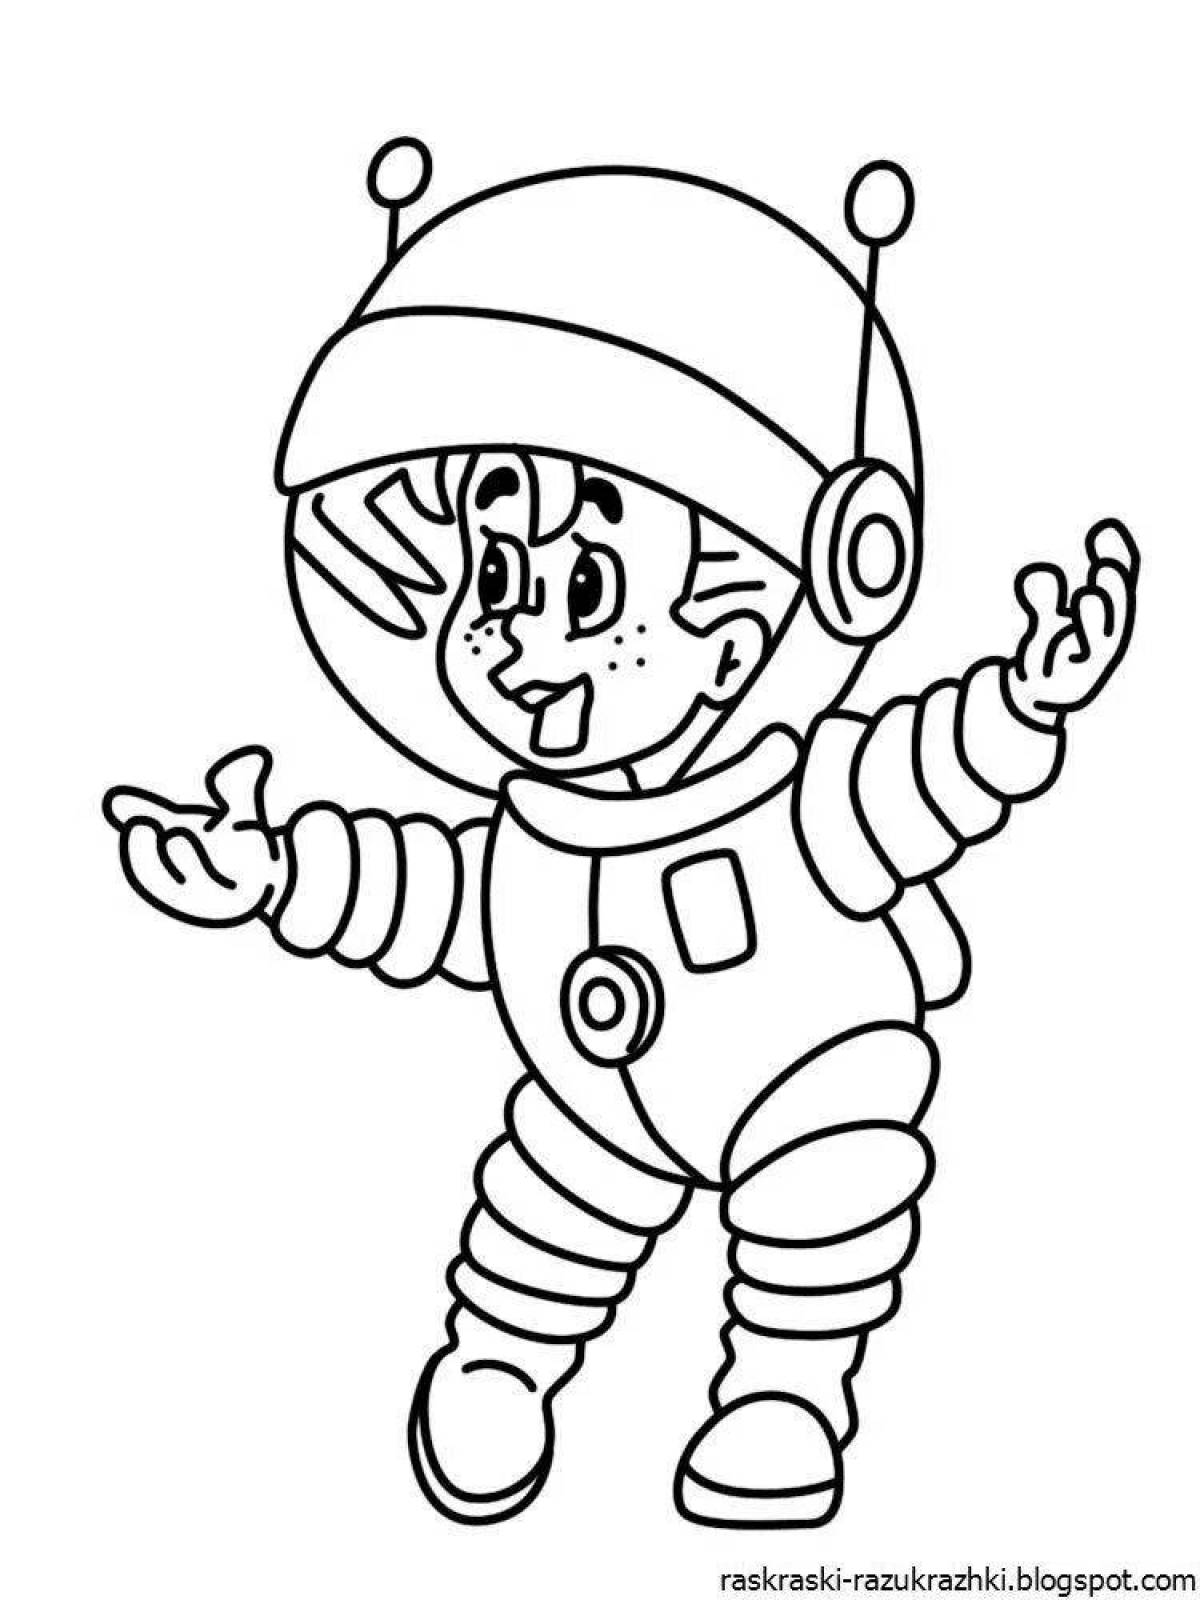 Раскраска веселый космонавт для детей